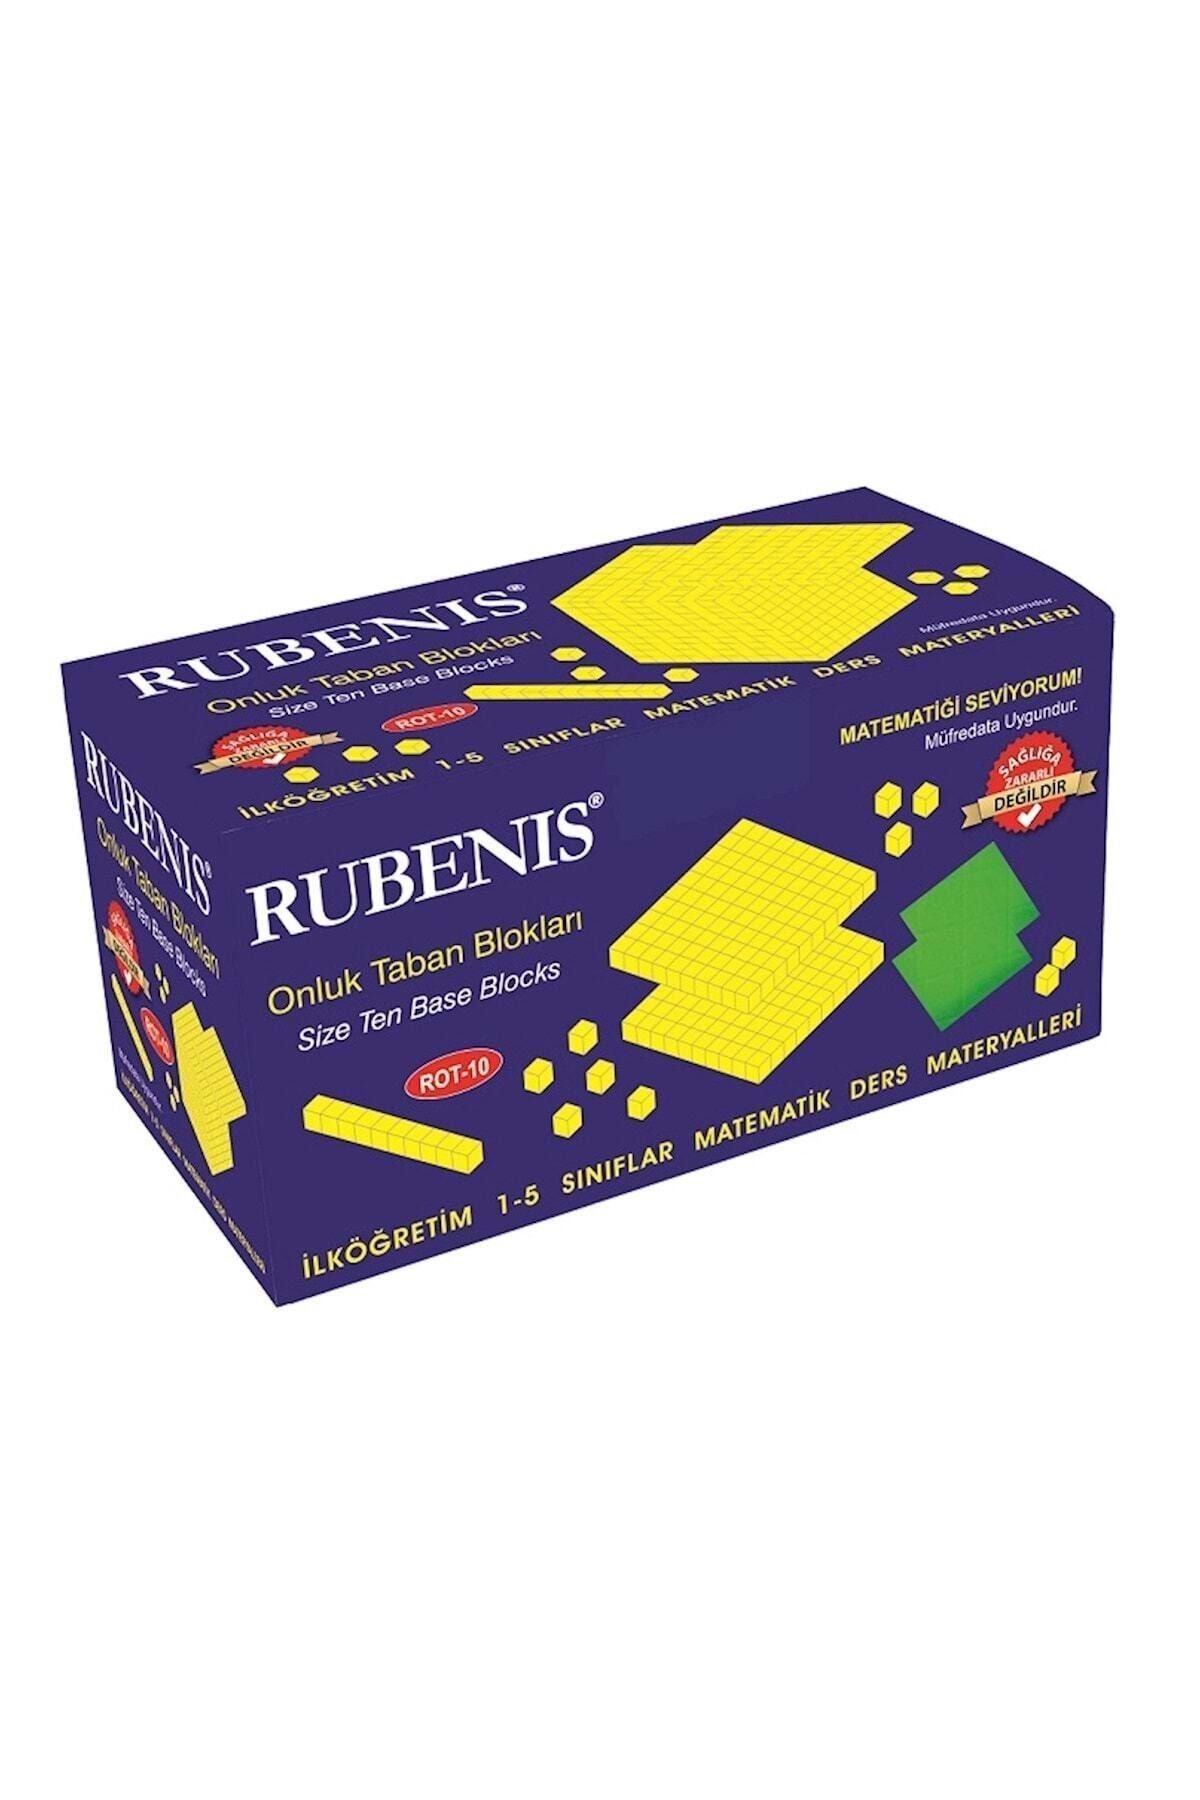 Rubenis Onluk Taban Blokları Rot 10